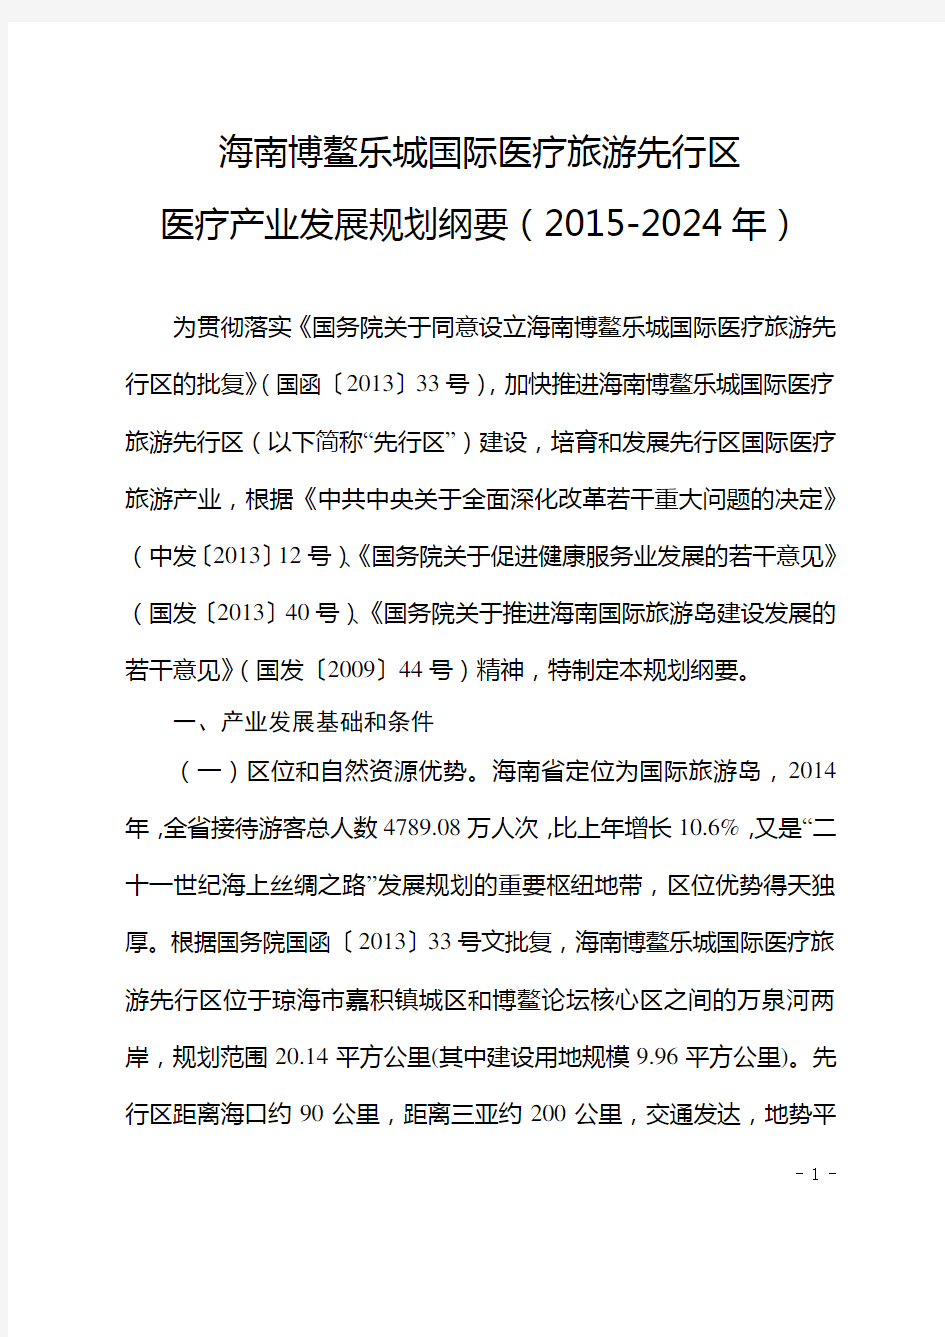 海南博鳌乐城国际医疗旅游先行区医疗产业发展规划纲要(2015-2024年)